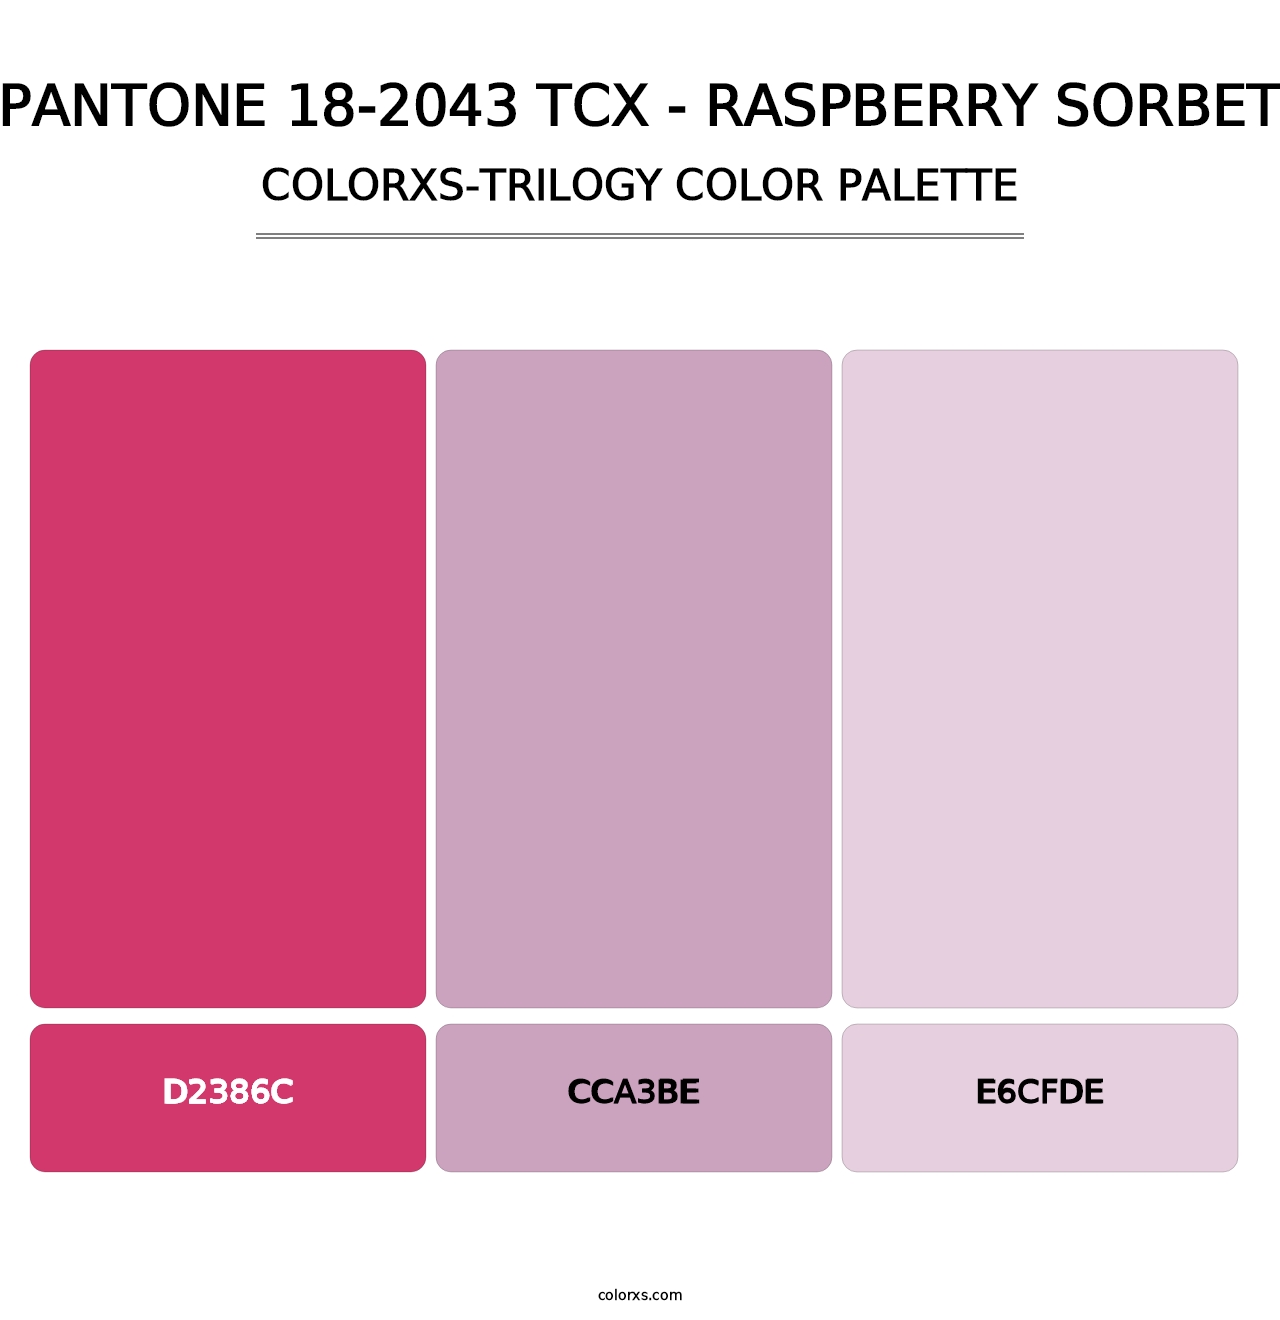 PANTONE 18-2043 TCX - Raspberry Sorbet - Colorxs Trilogy Palette